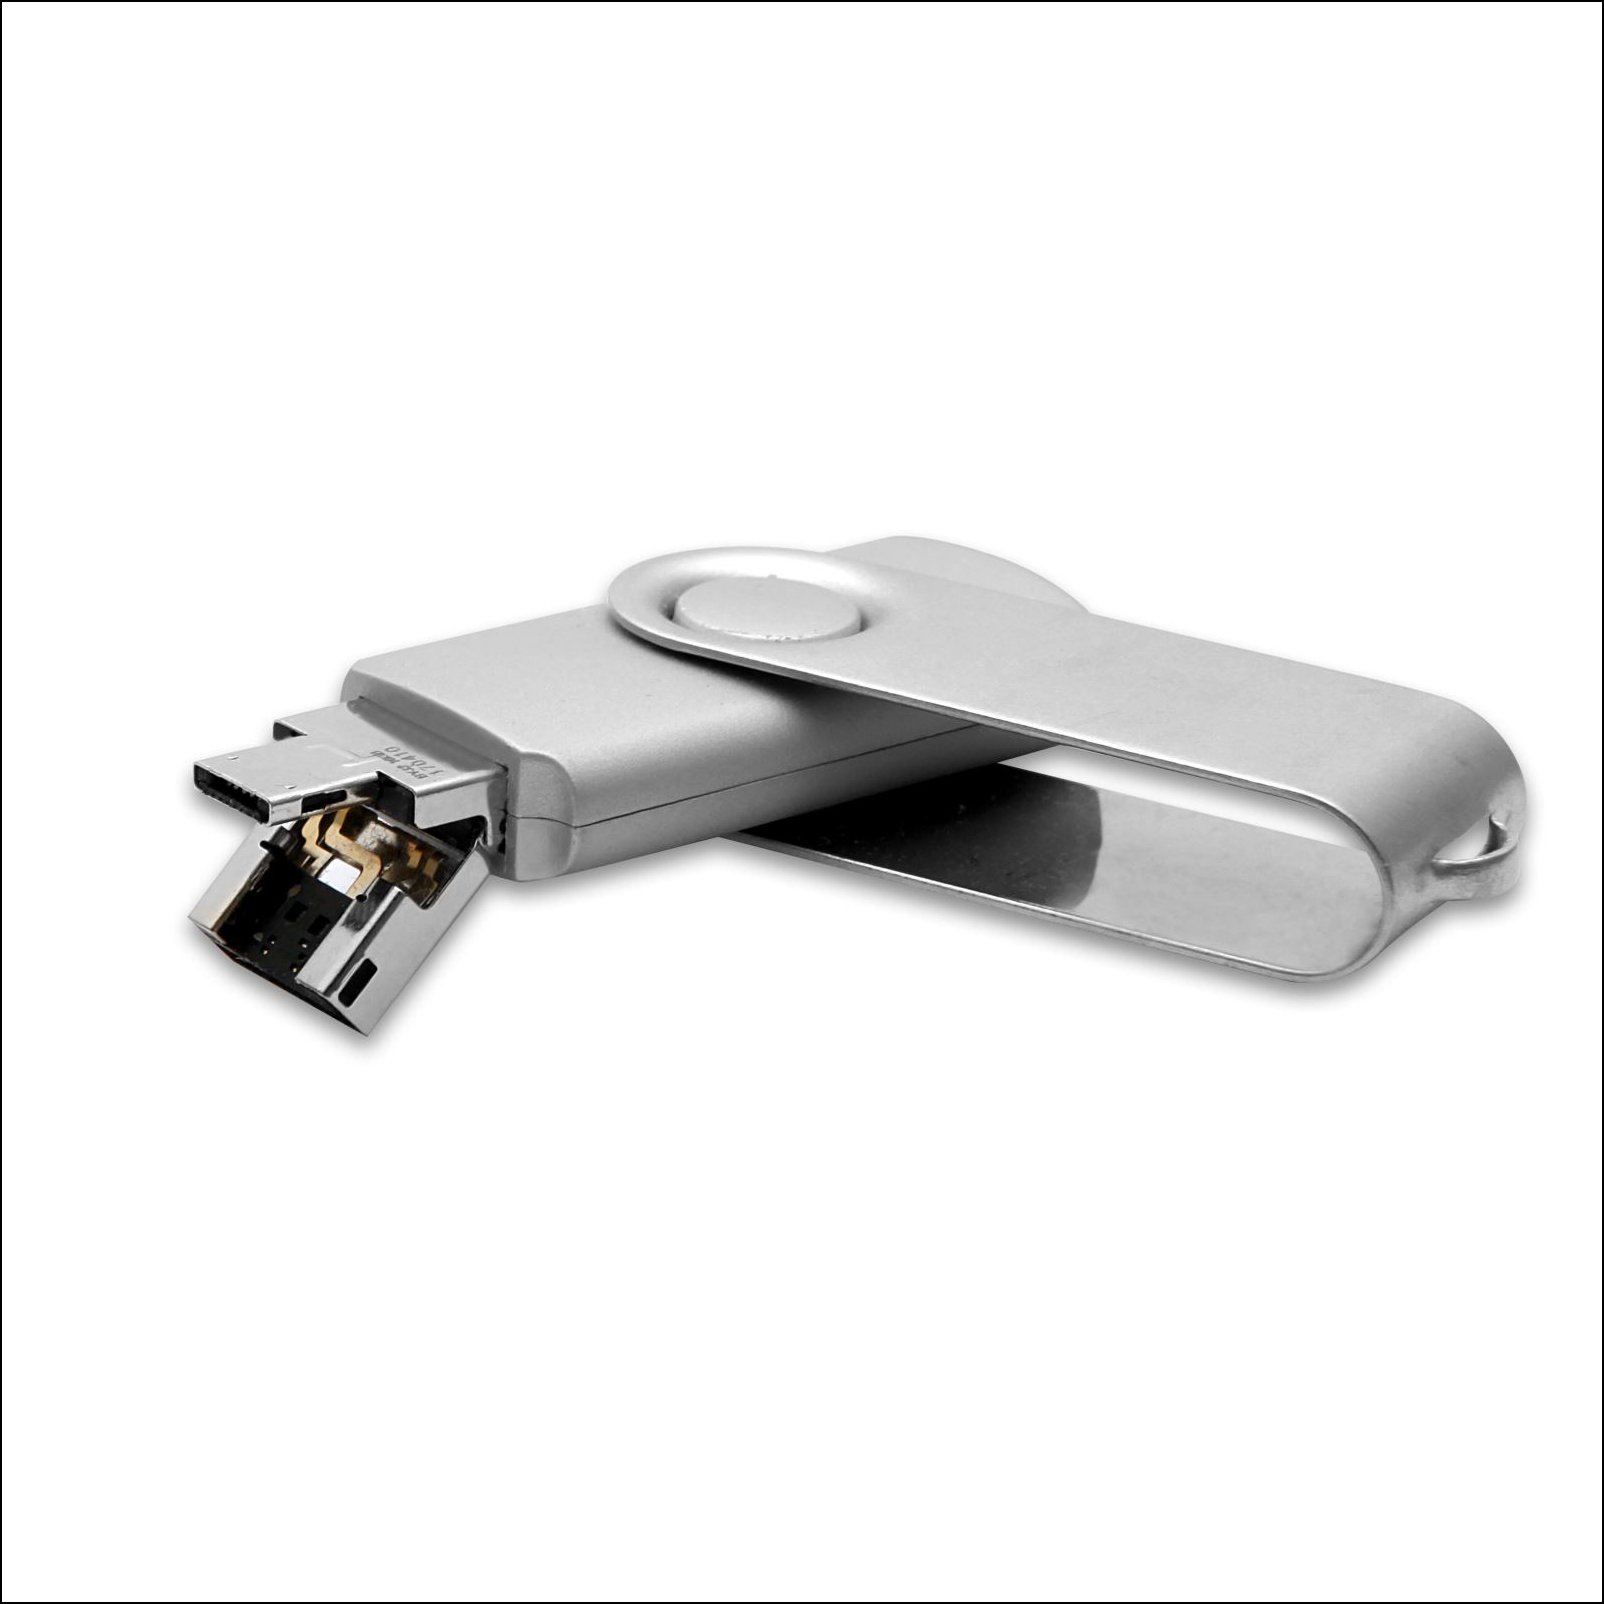 OTG Twister USB Bellek